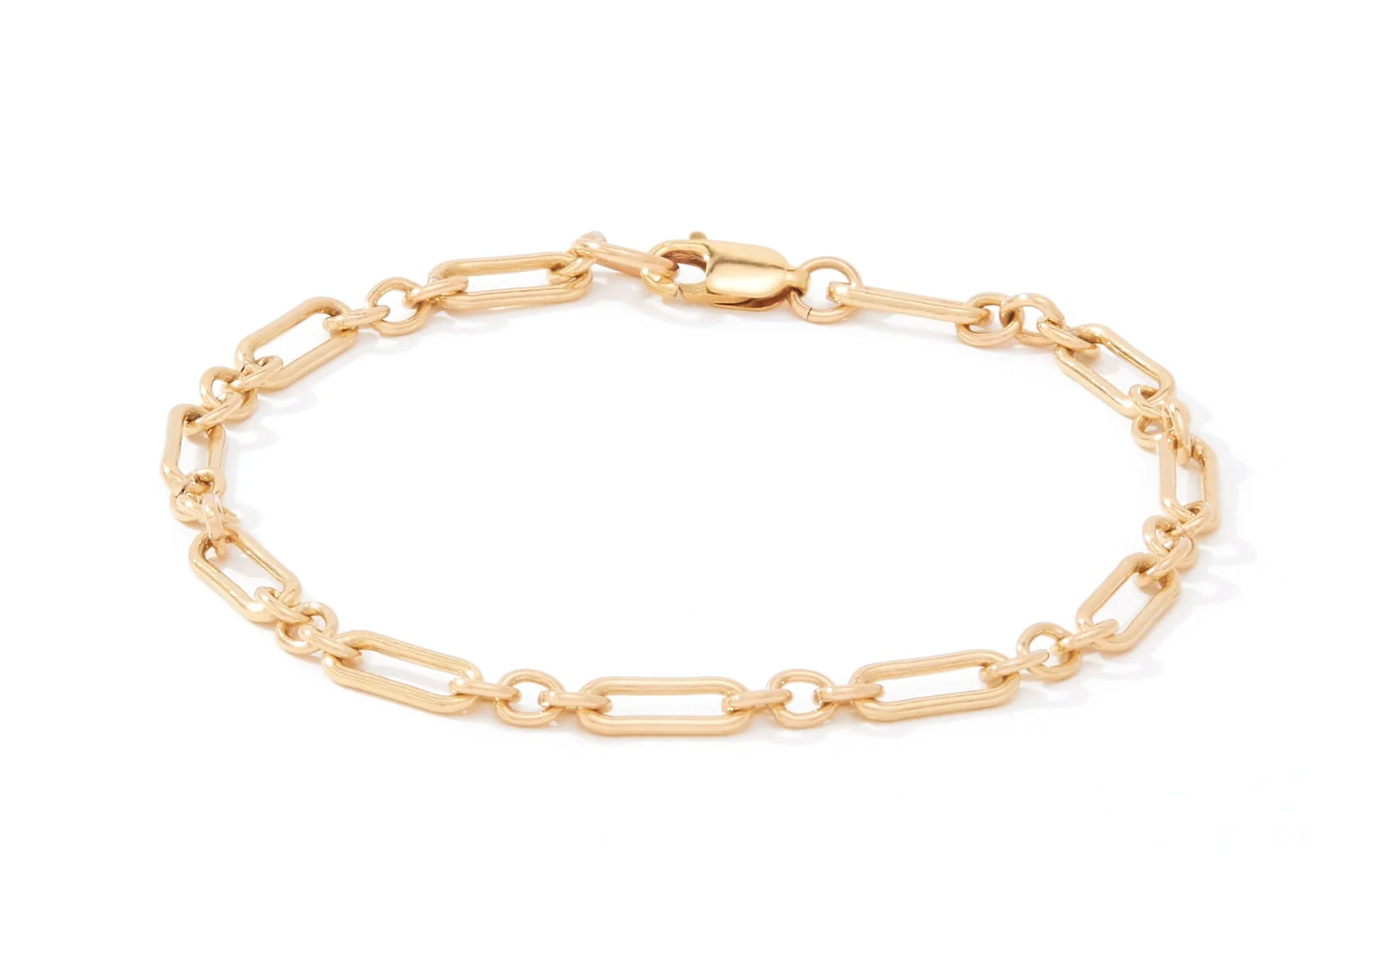 Links of Love Bracelet Gold